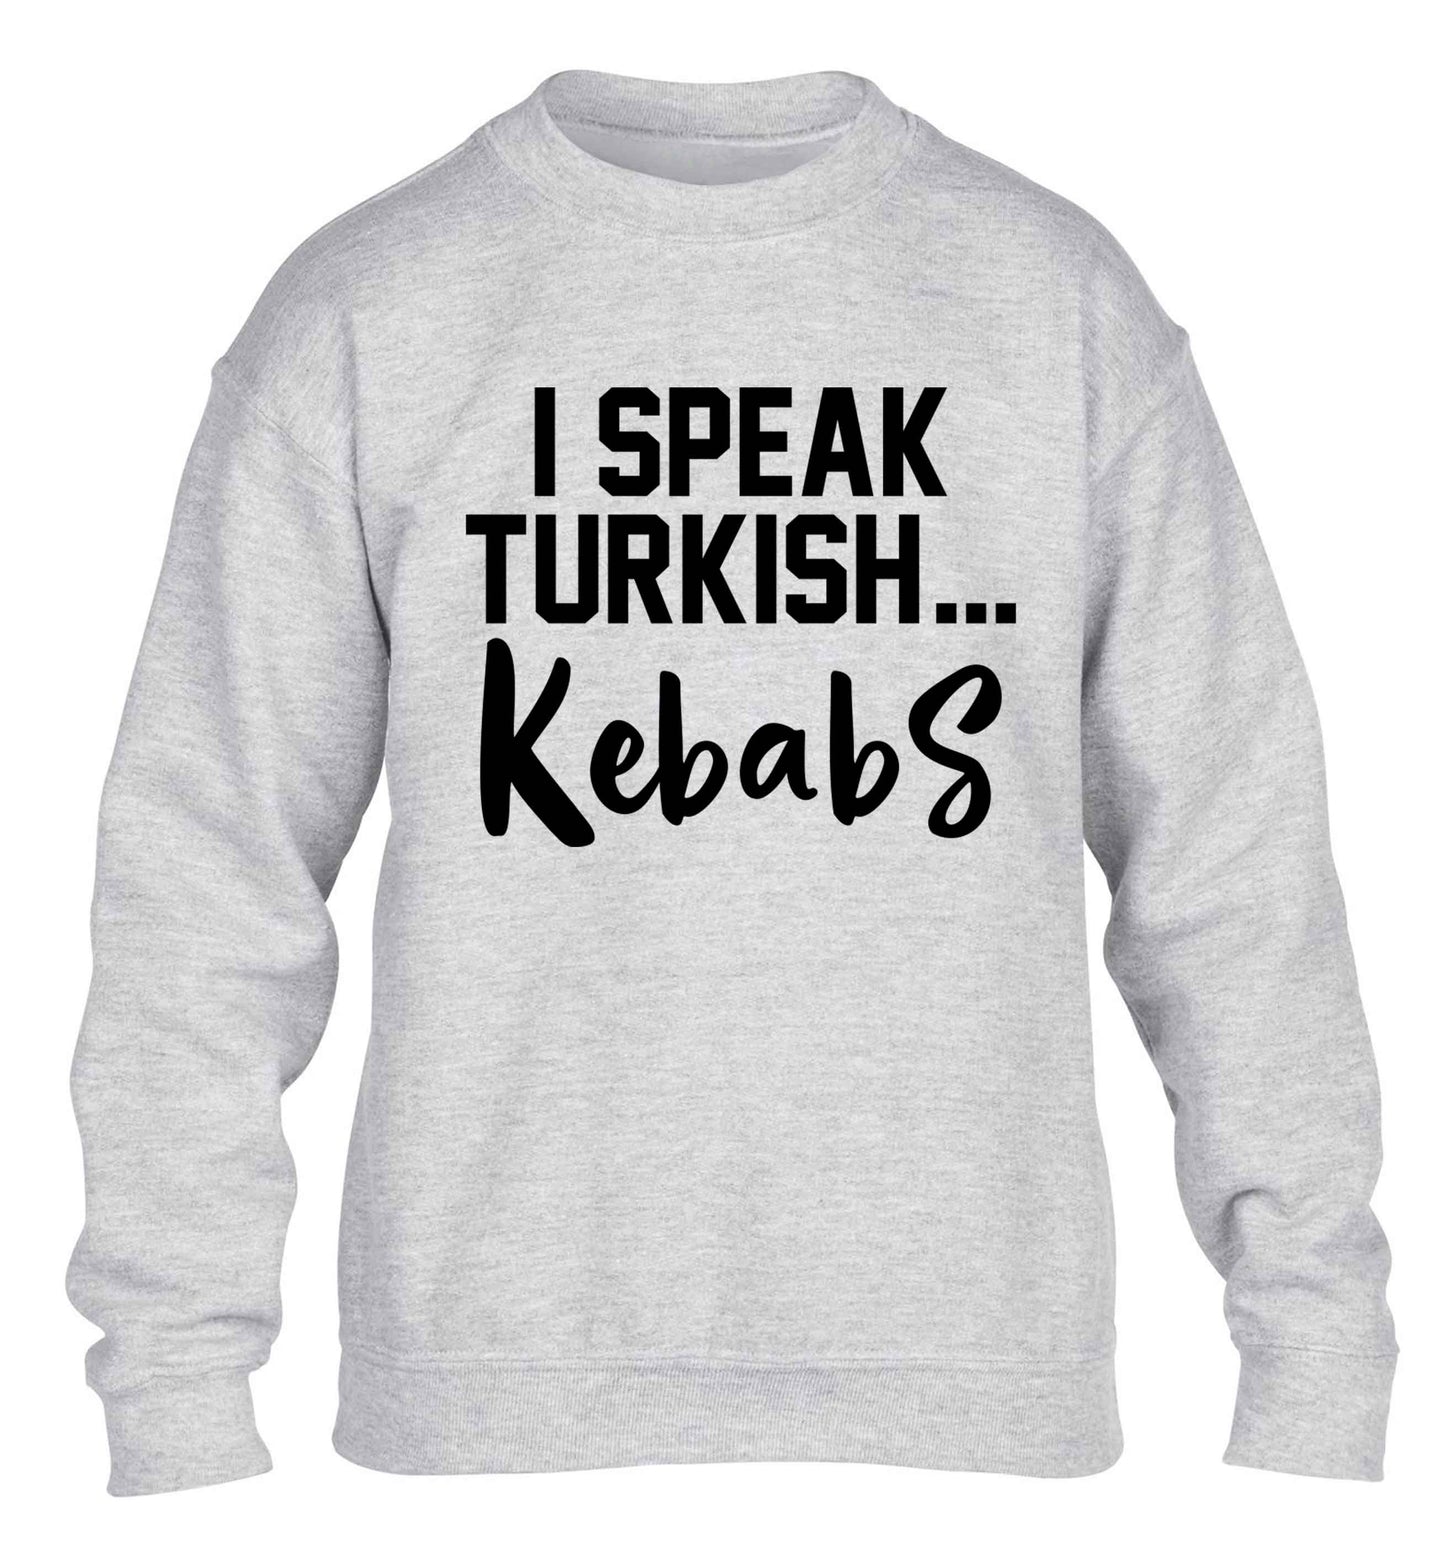 I speak Turkish...kebabs children's grey sweater 12-13 Years